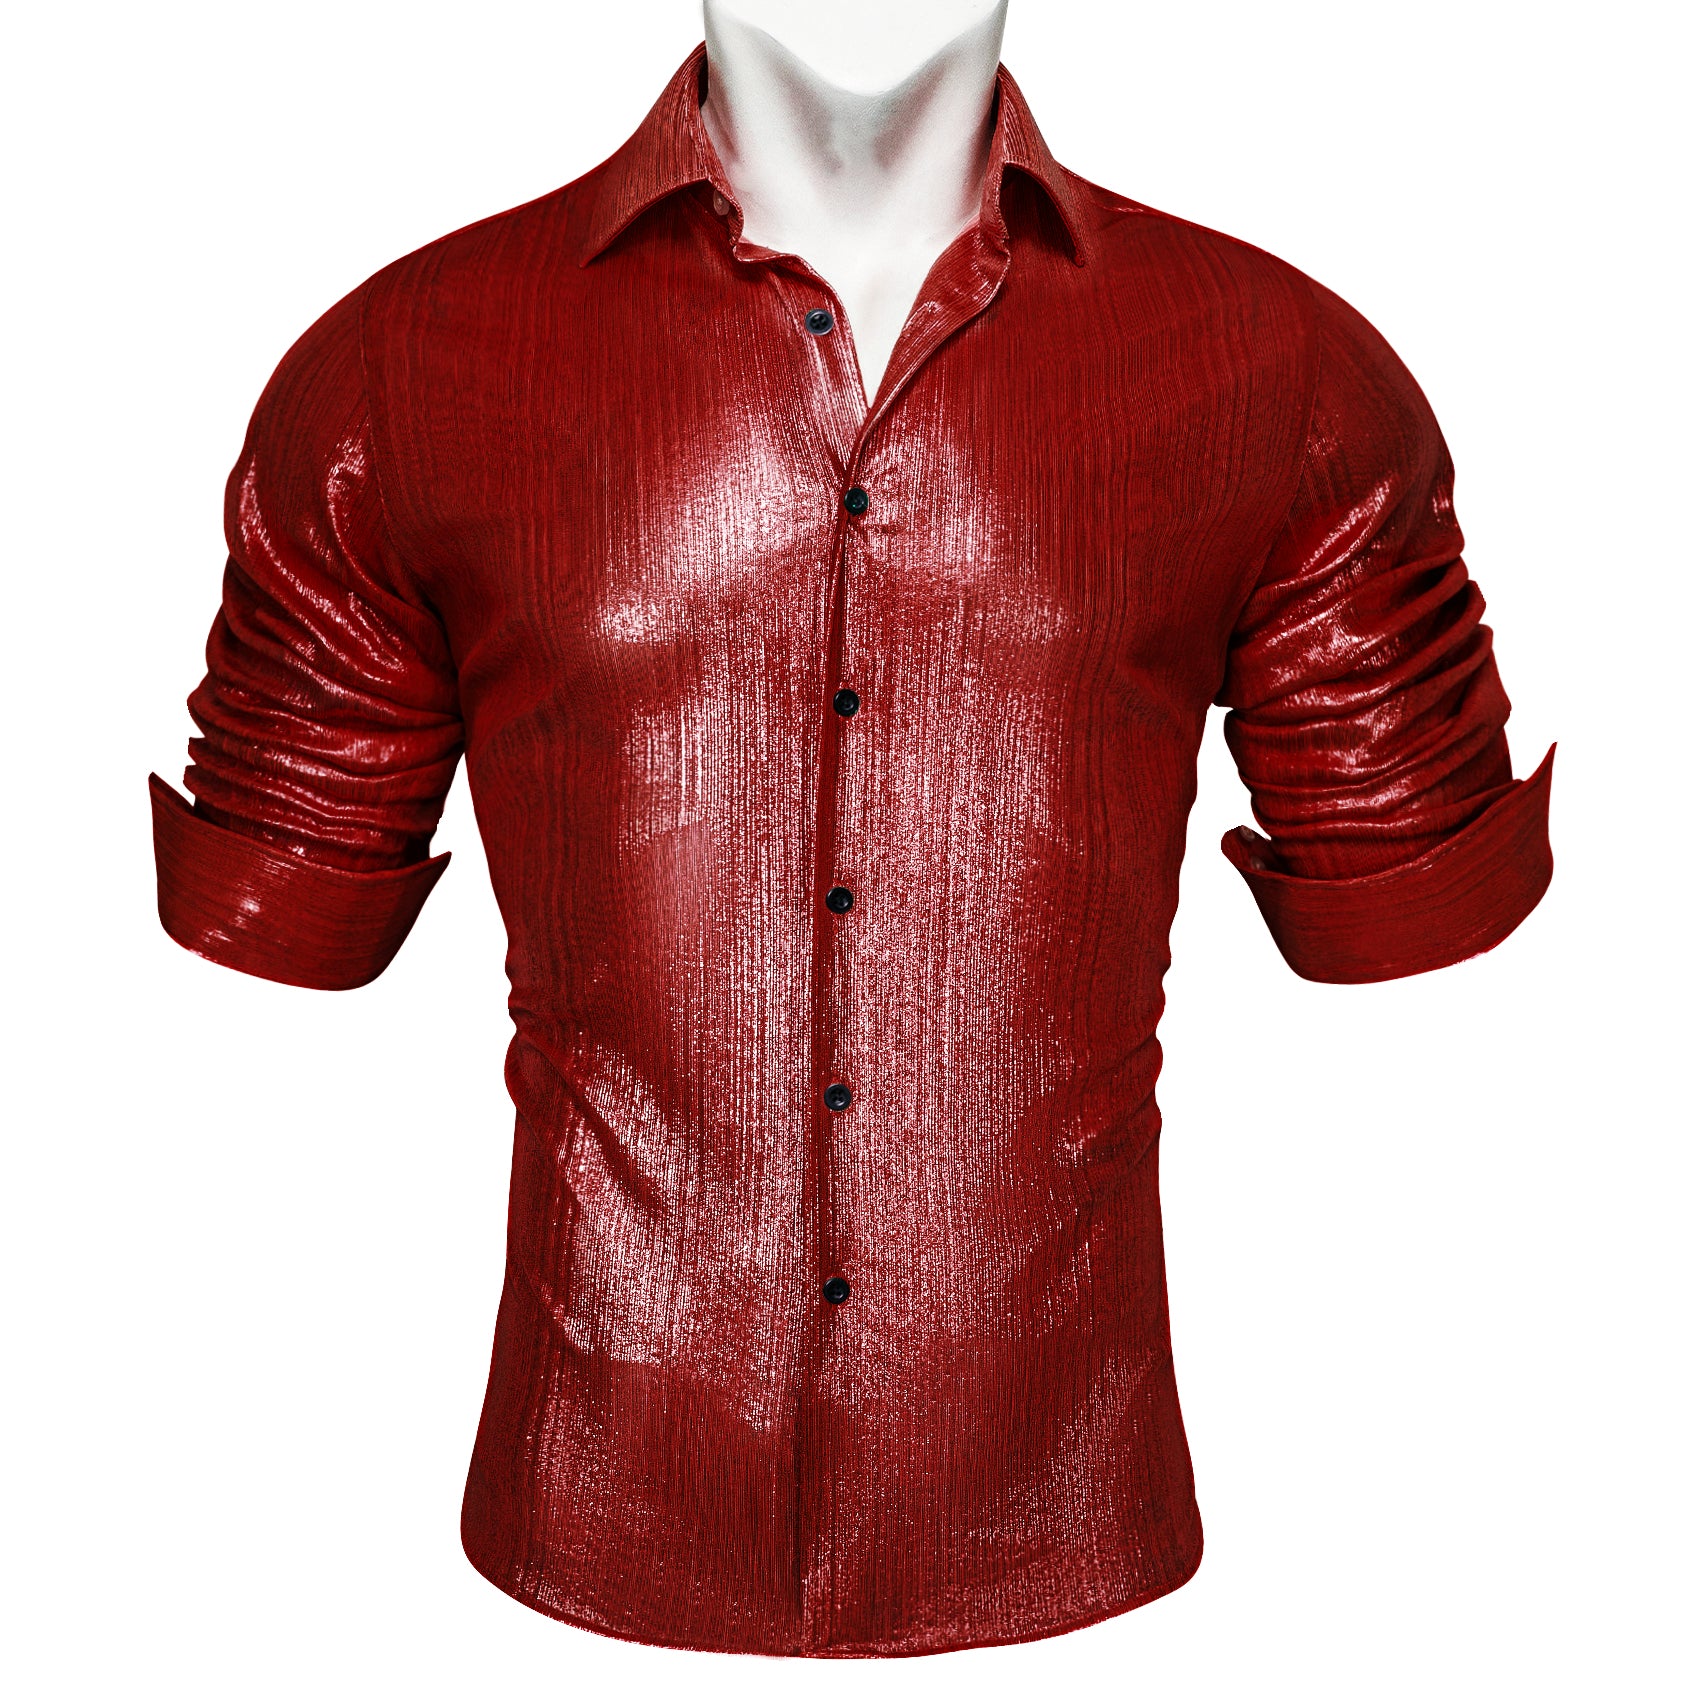 Barry.wang Button Down Shirt Brick Red Solid Silk Men's Long Sleeve Shirt